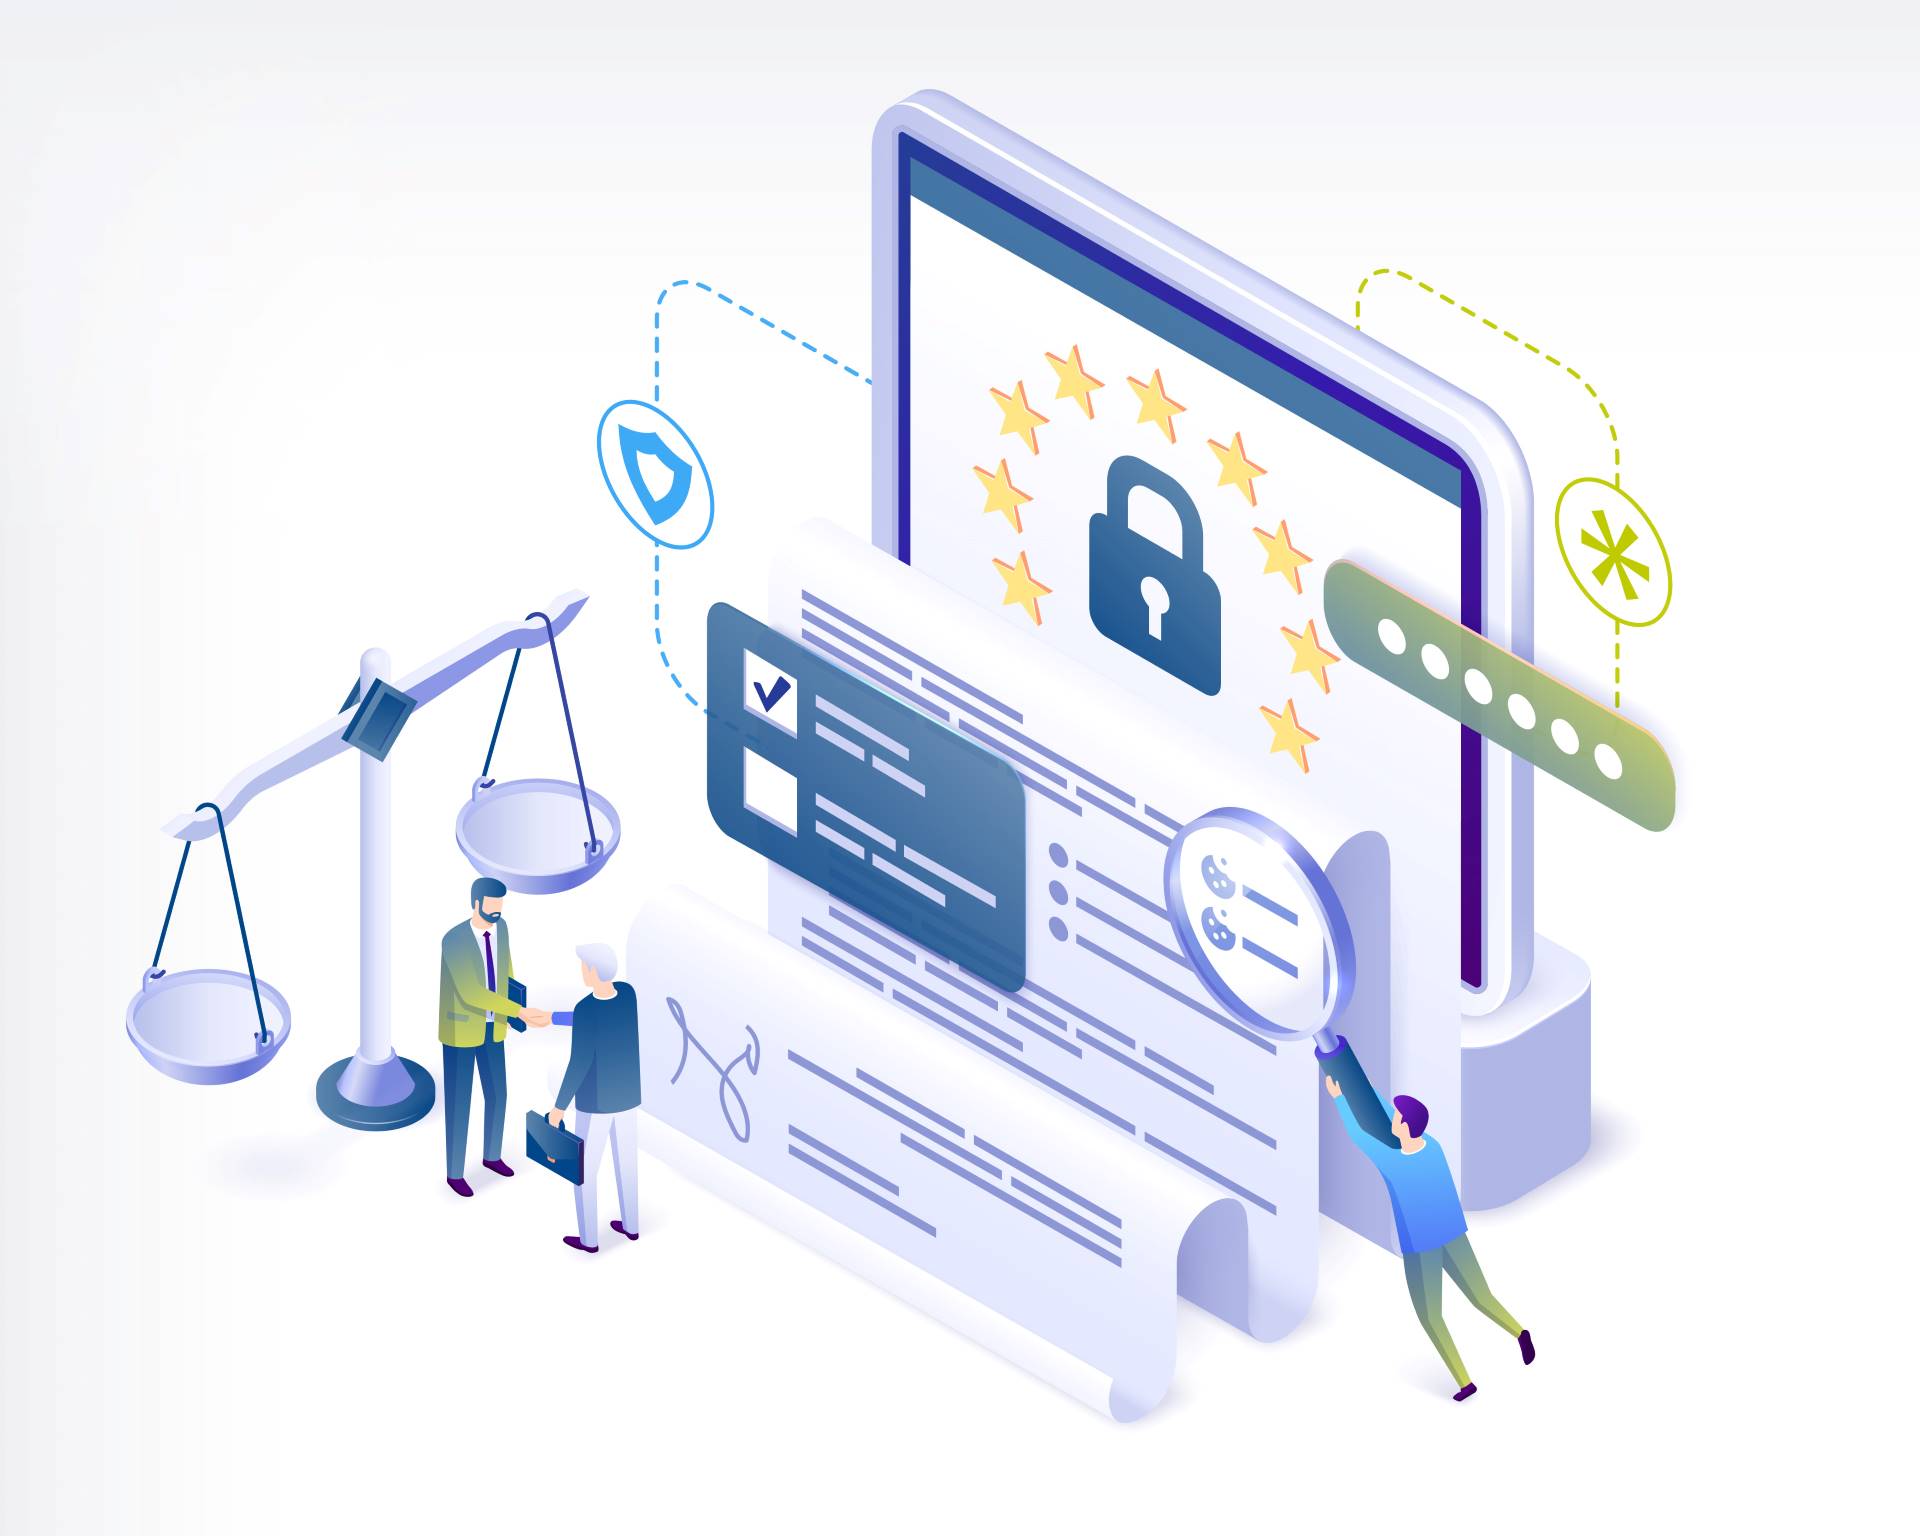 Illustration: Gesetzliche Rahmenbedingungen des Data Act und Auswirkung der Regelungen auf Produkt- und Dienstdaten von "vernetzten Produkten".